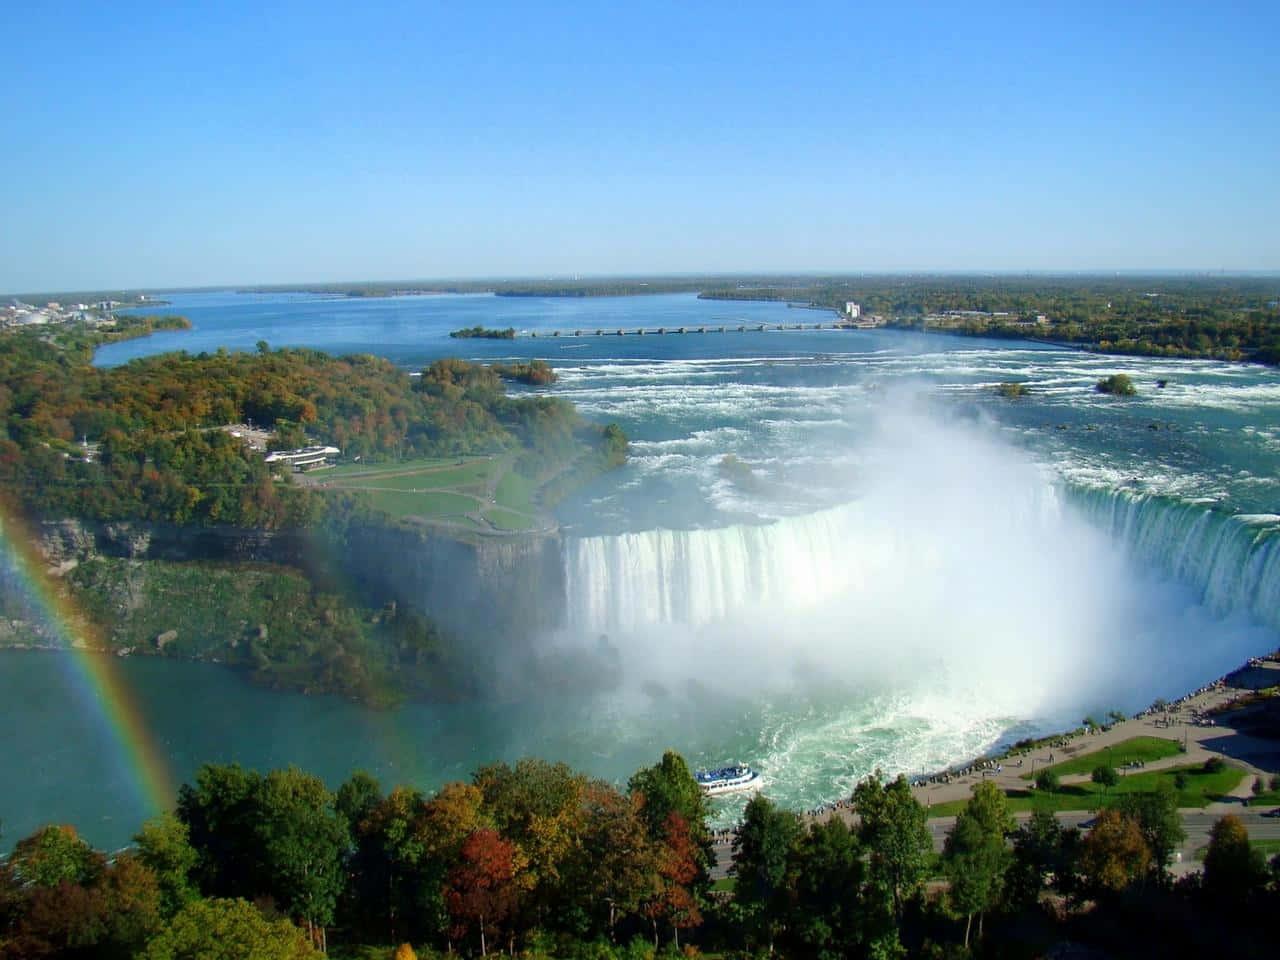 Disfrutala Belleza Y El Ambiente Relajante En La Magnífica Niagara Falls En Alta Definición De 720p.